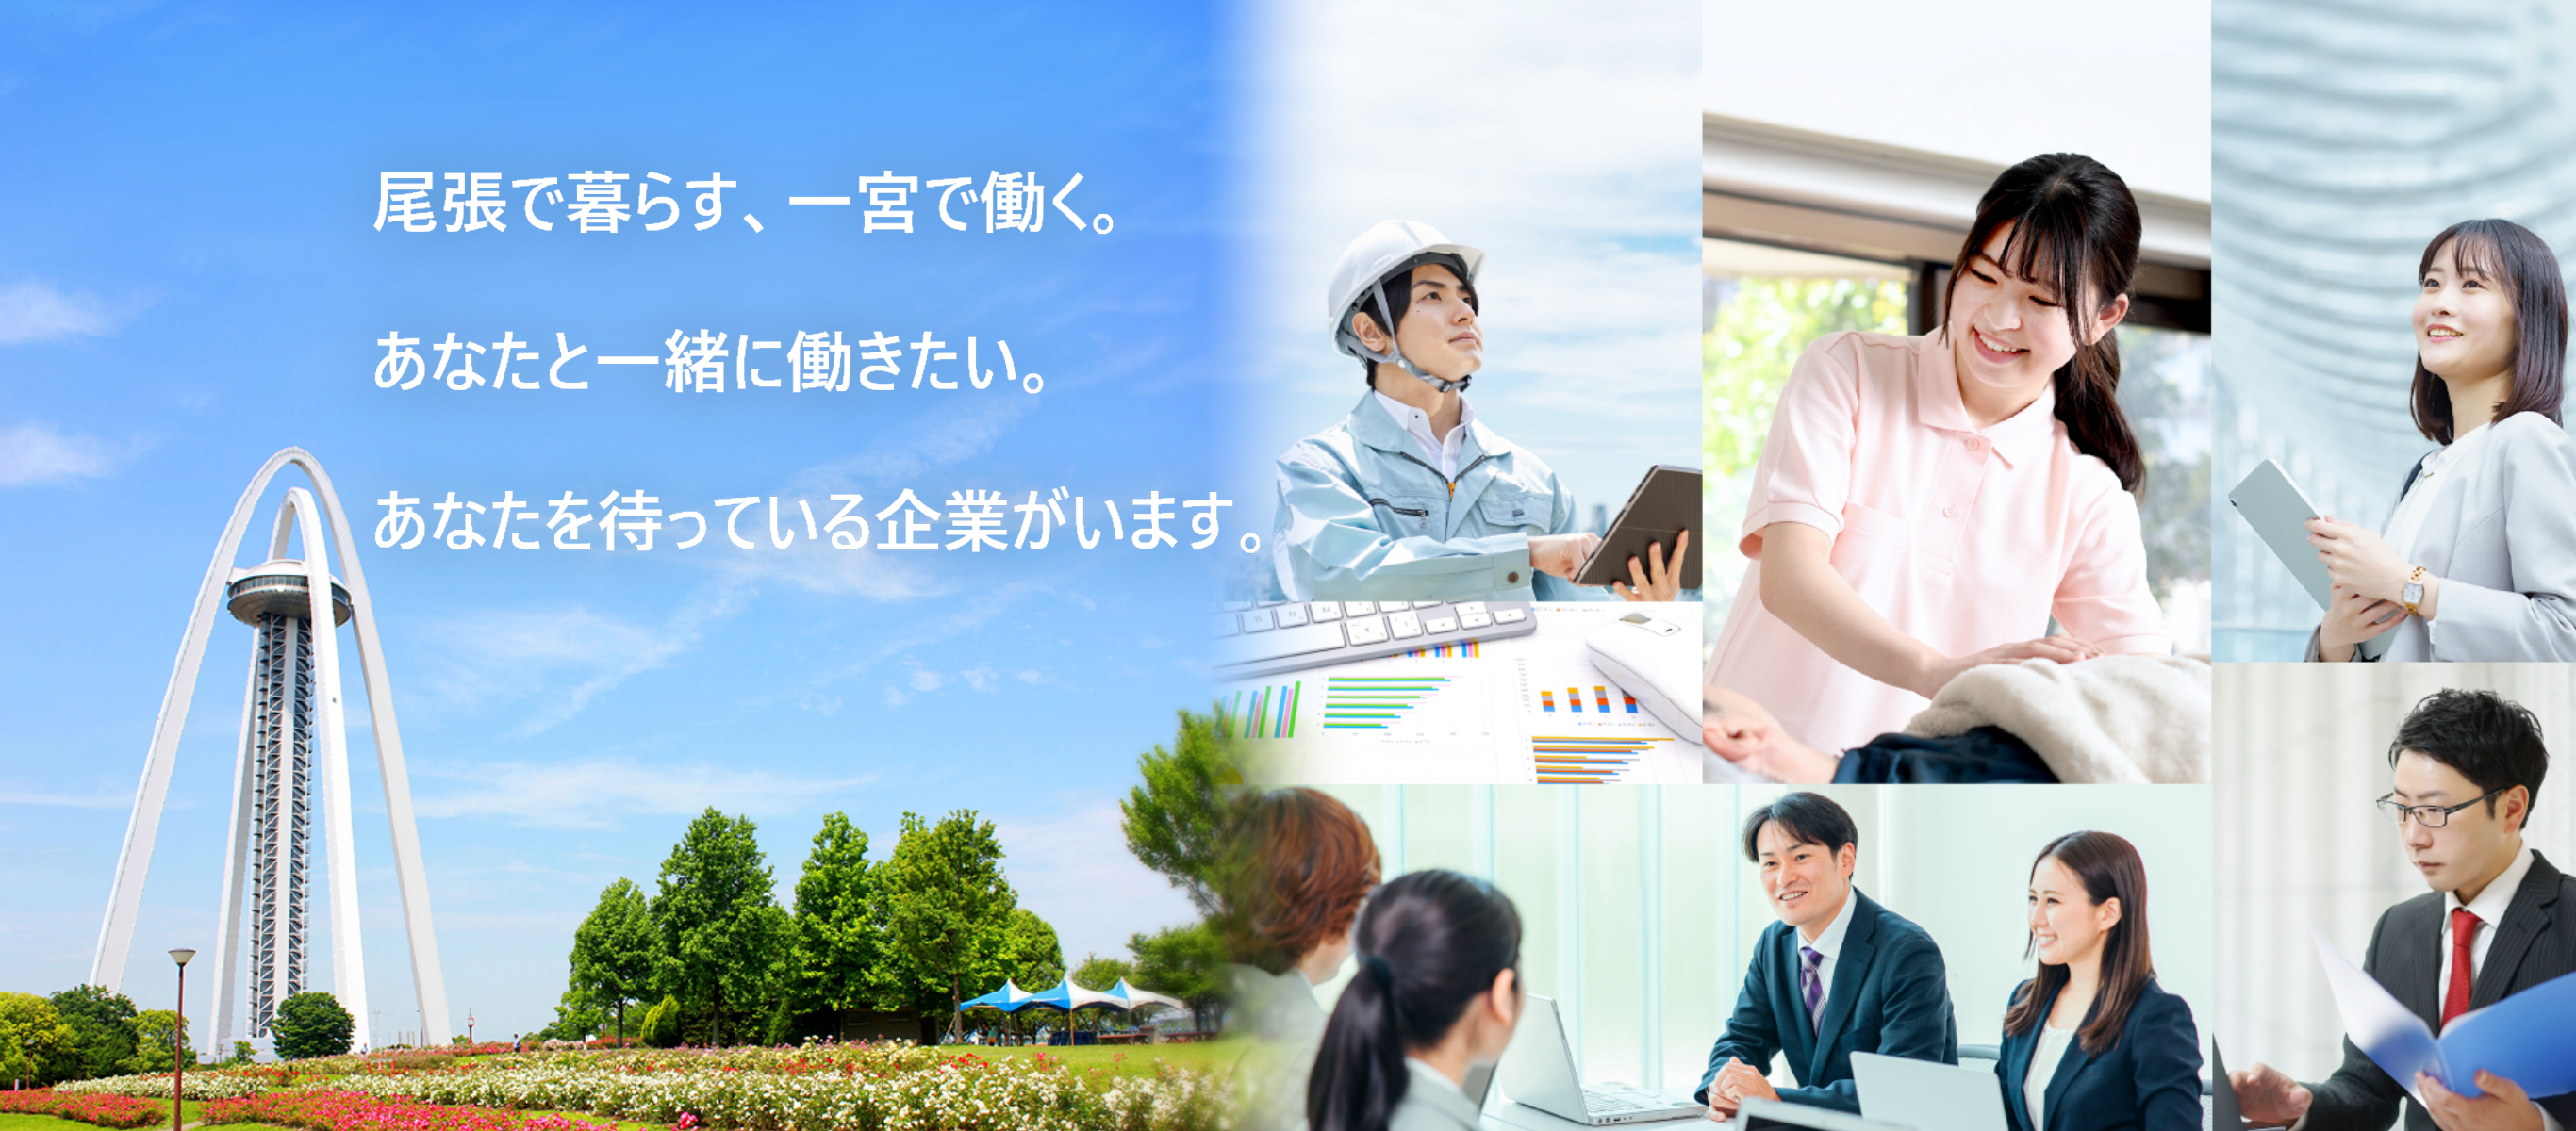 愛知県一宮市の就職情報サイト